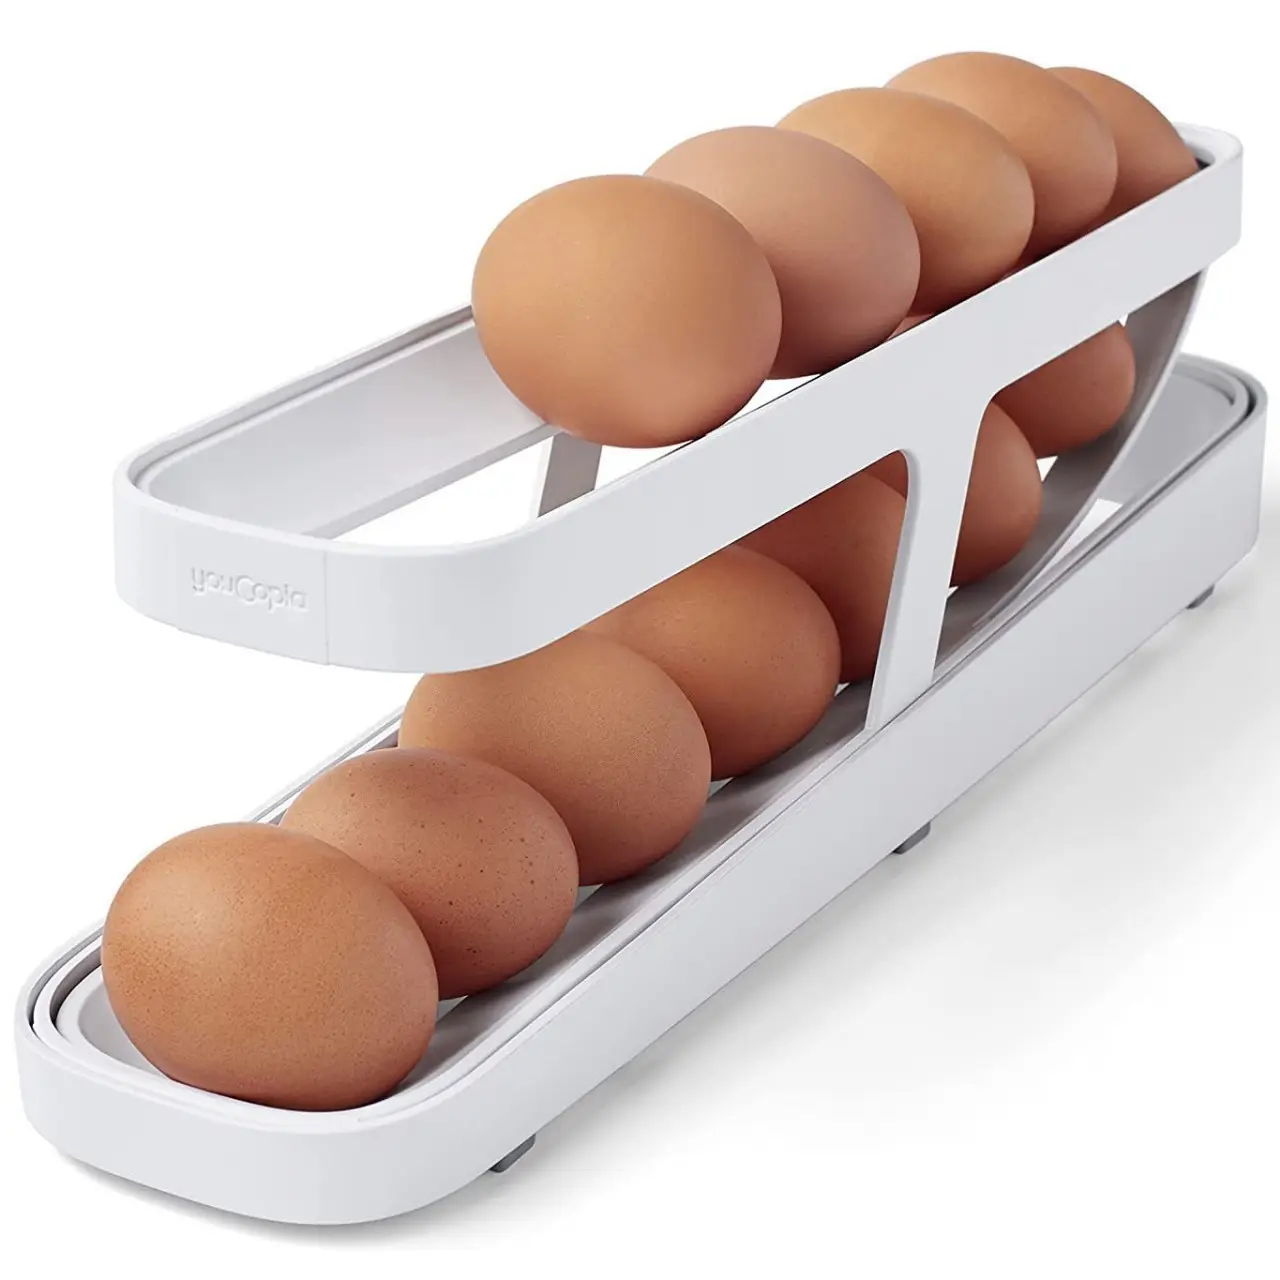 फ्रिज के लिए रोल्डडाउन डिज़ाइन के साथ 1 पीसी अंडा डिस्पेंसर - अंडे को साफ-सुथरा स्टोर और वितरित करता है